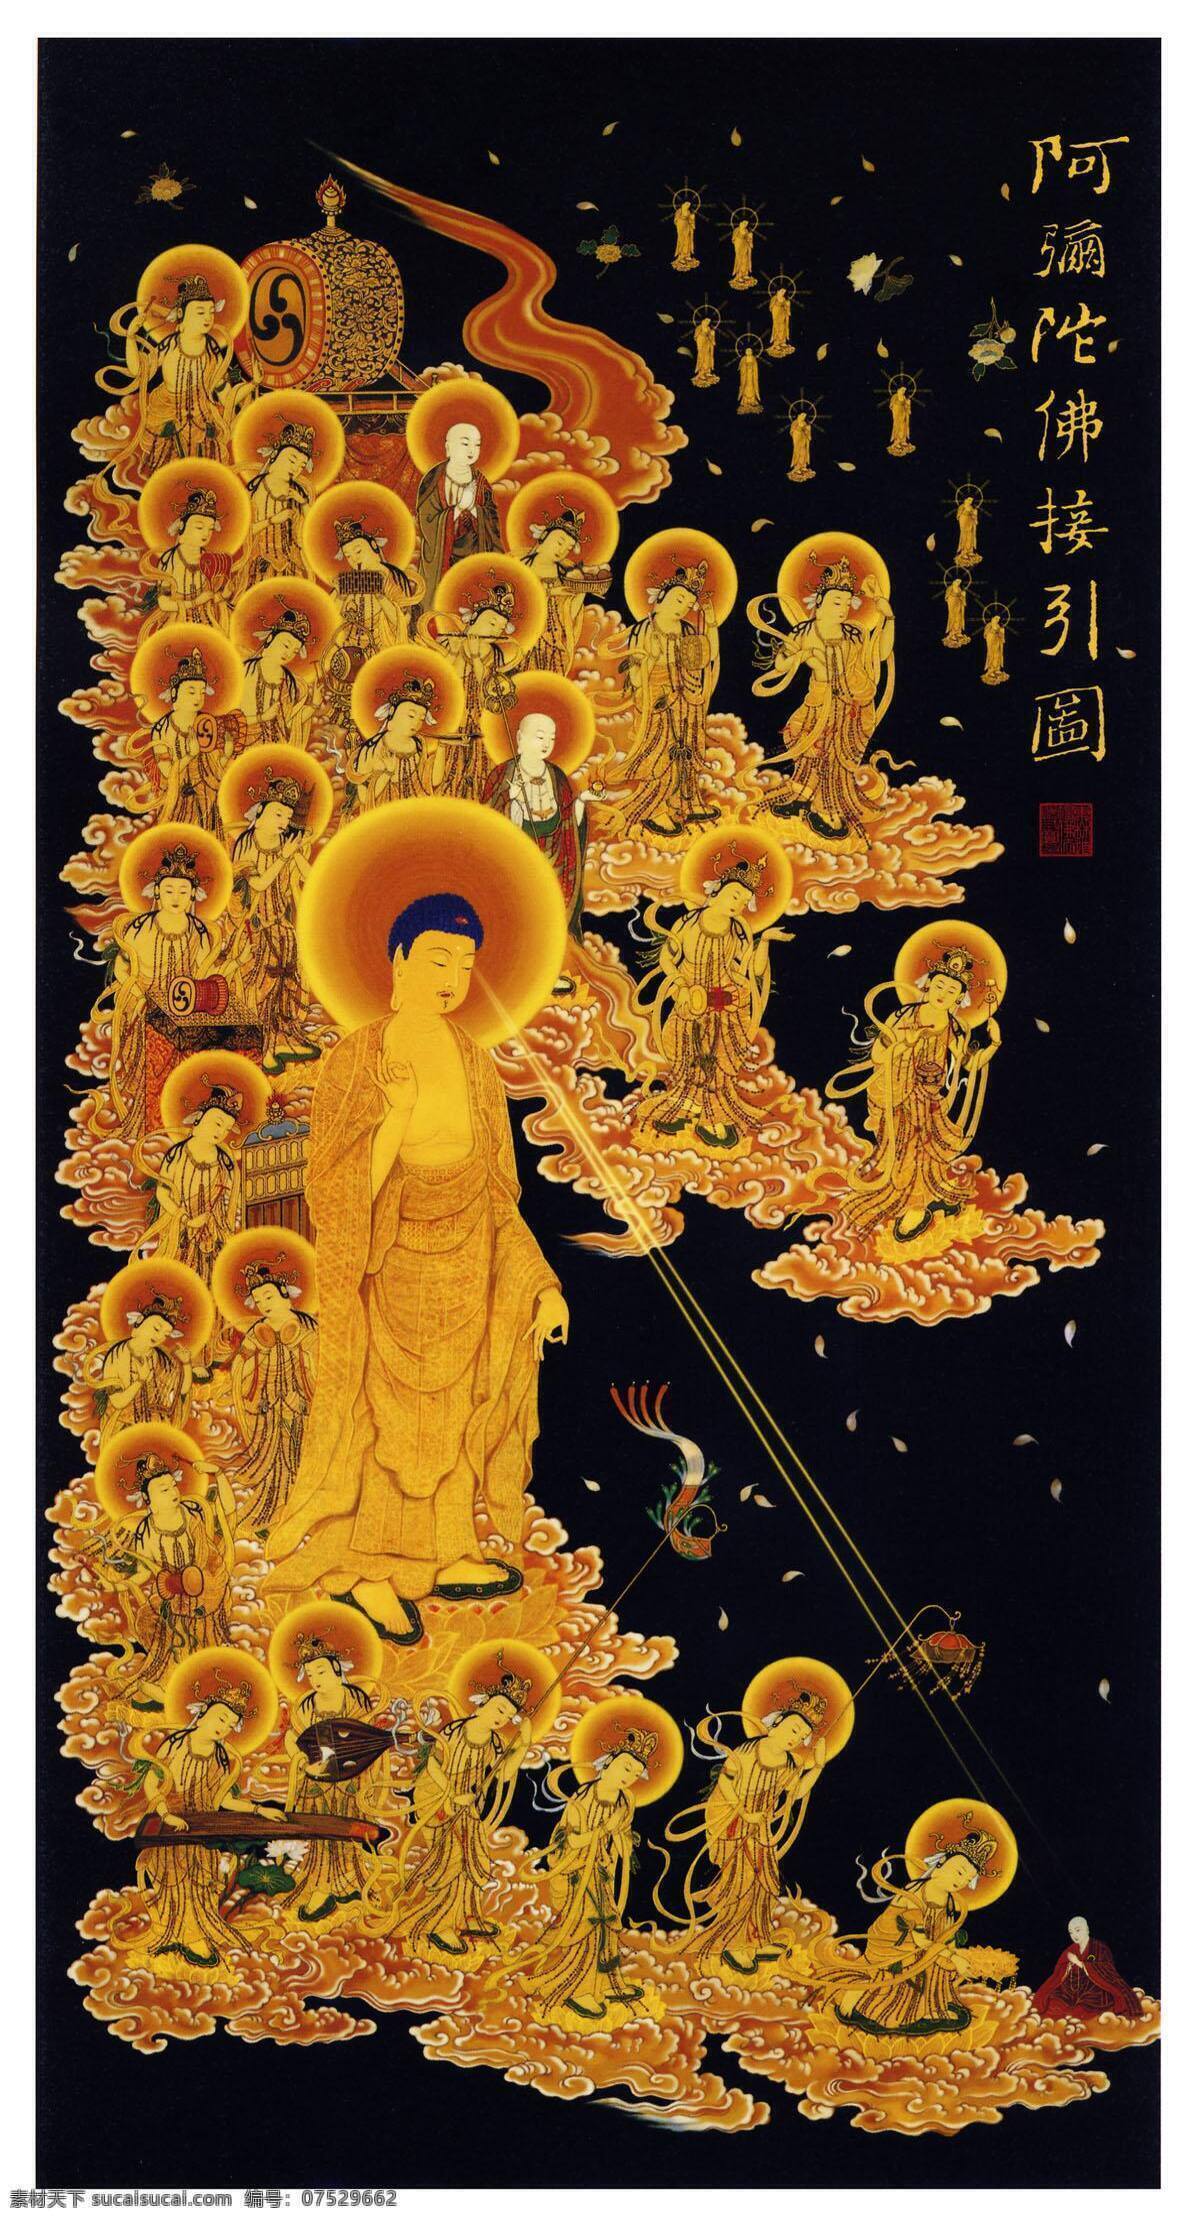 阿弥陀佛 接引 图 佛教图片 西方三圣 佛像 宗教信仰 文化艺术